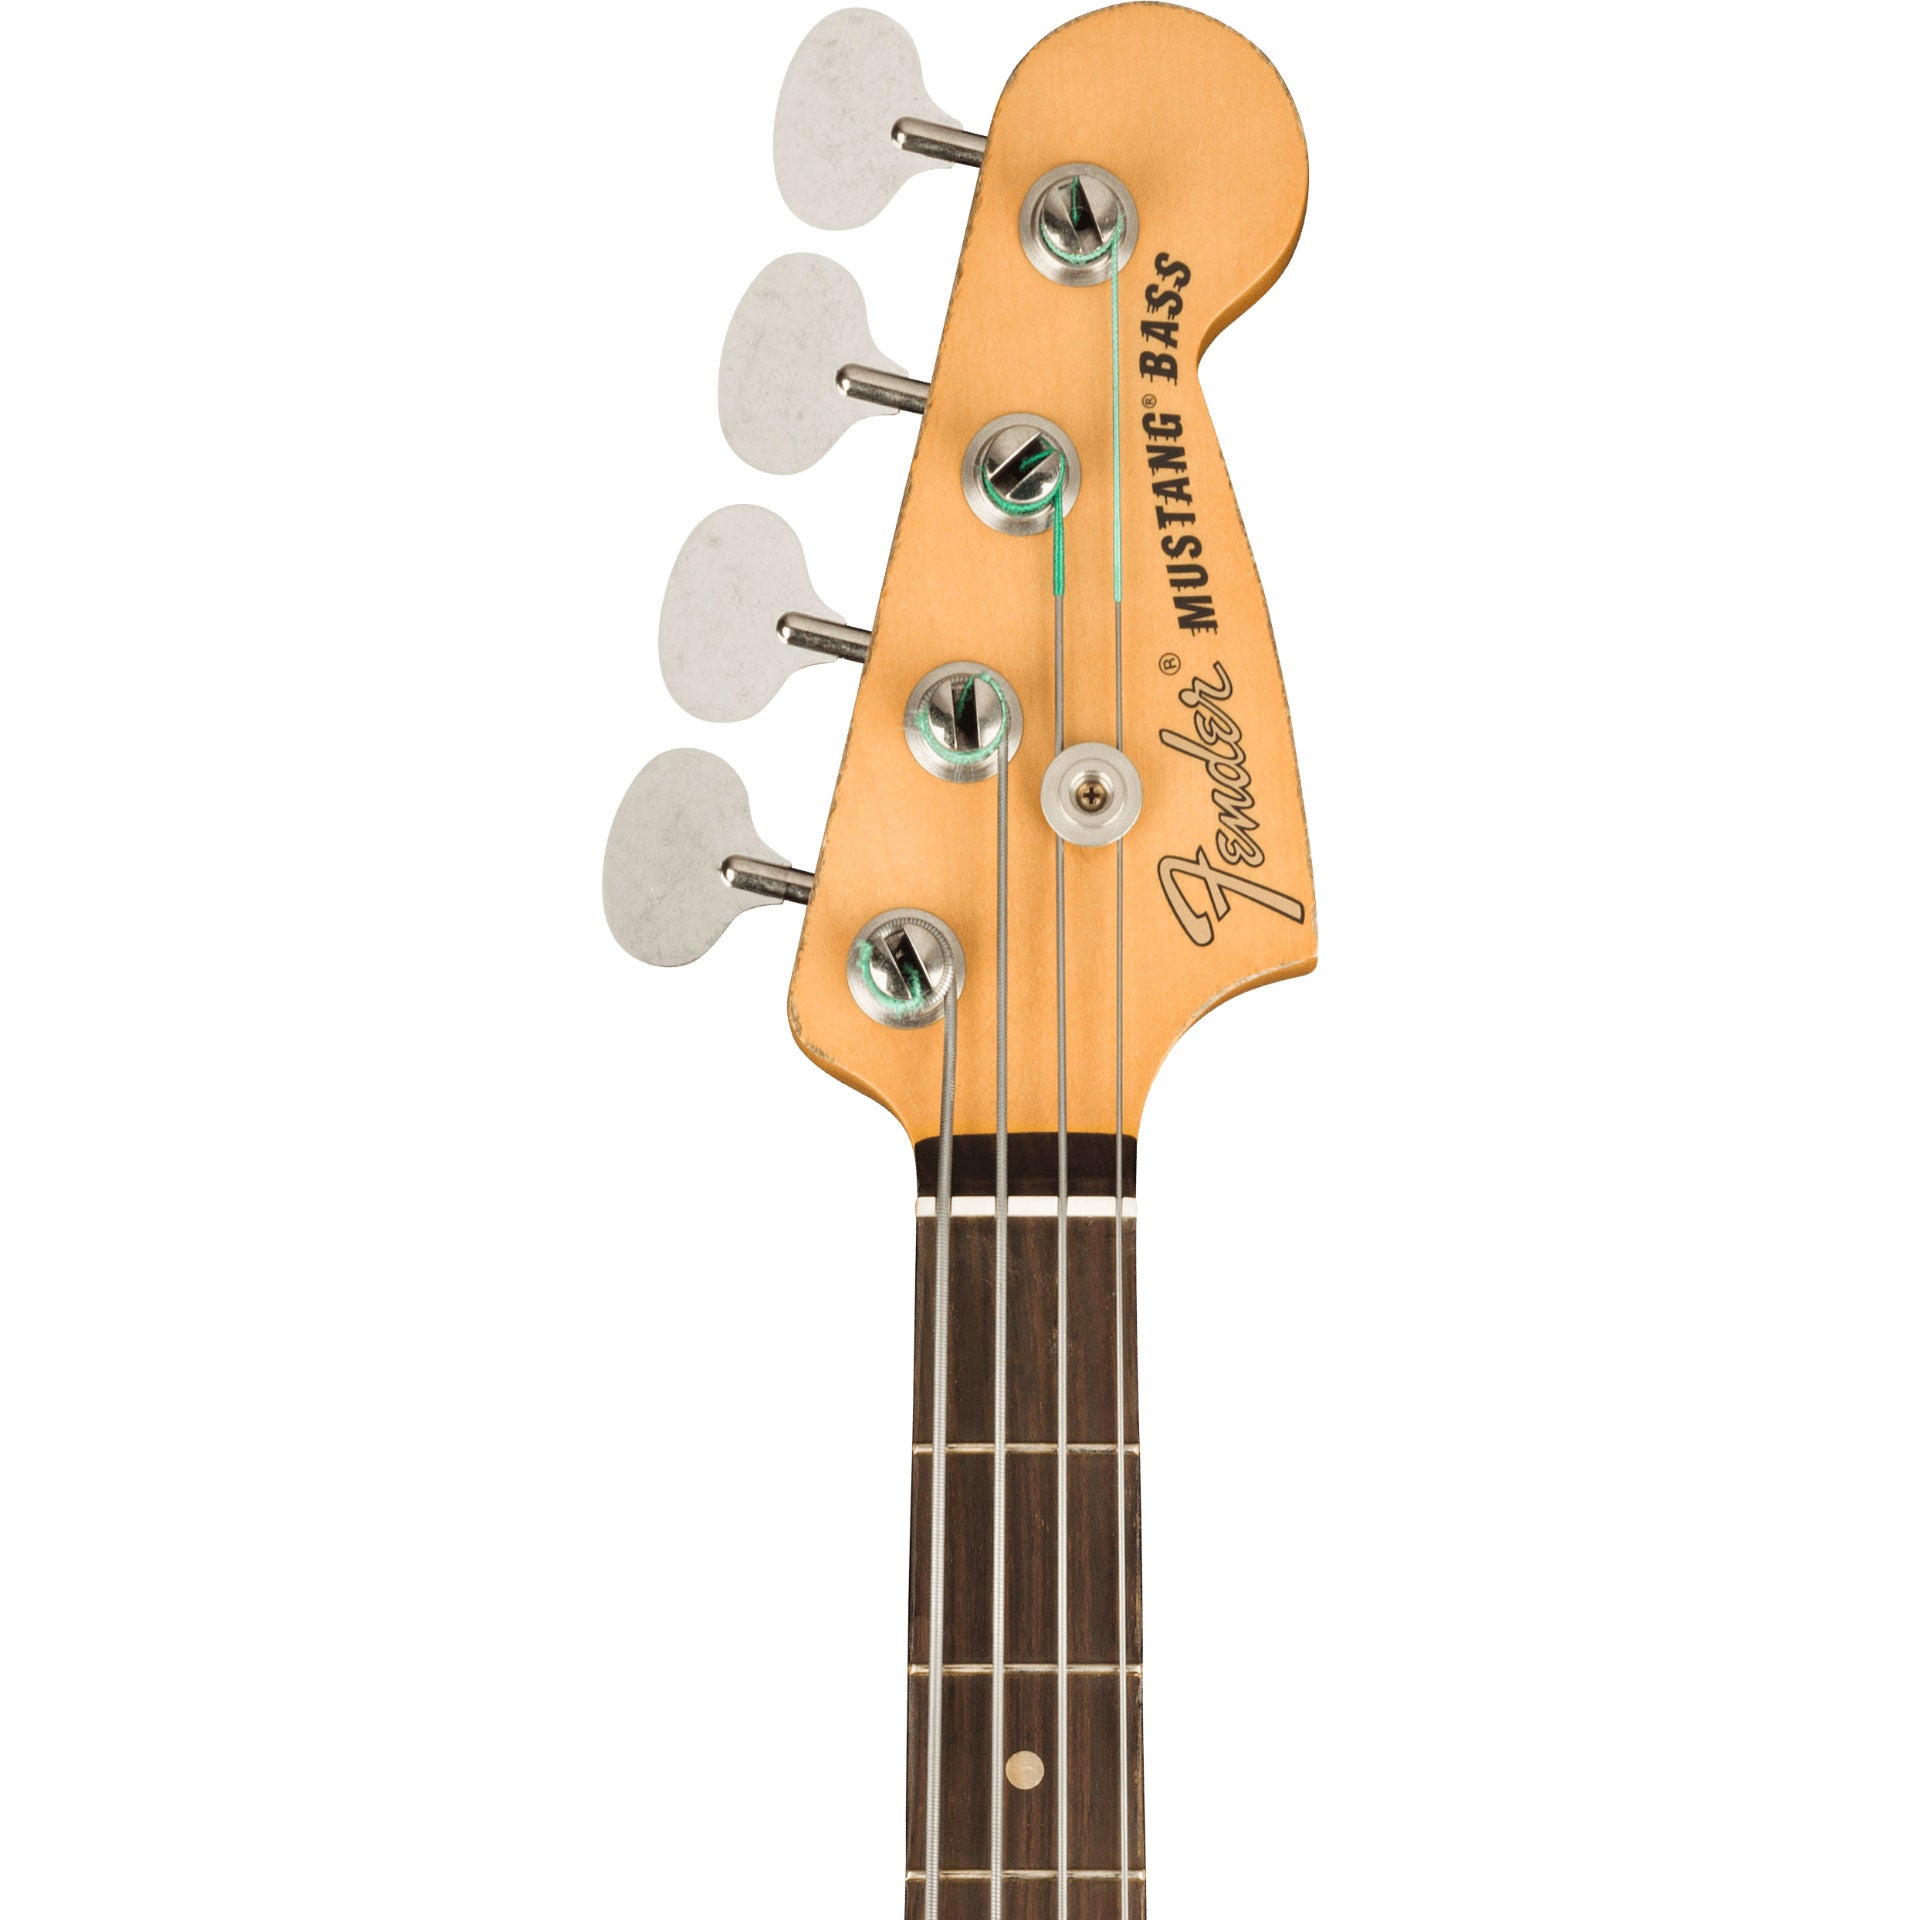 Fender JMJ Road Worn Mustang Bass 公式銀座 - amariecomplementos.com.br